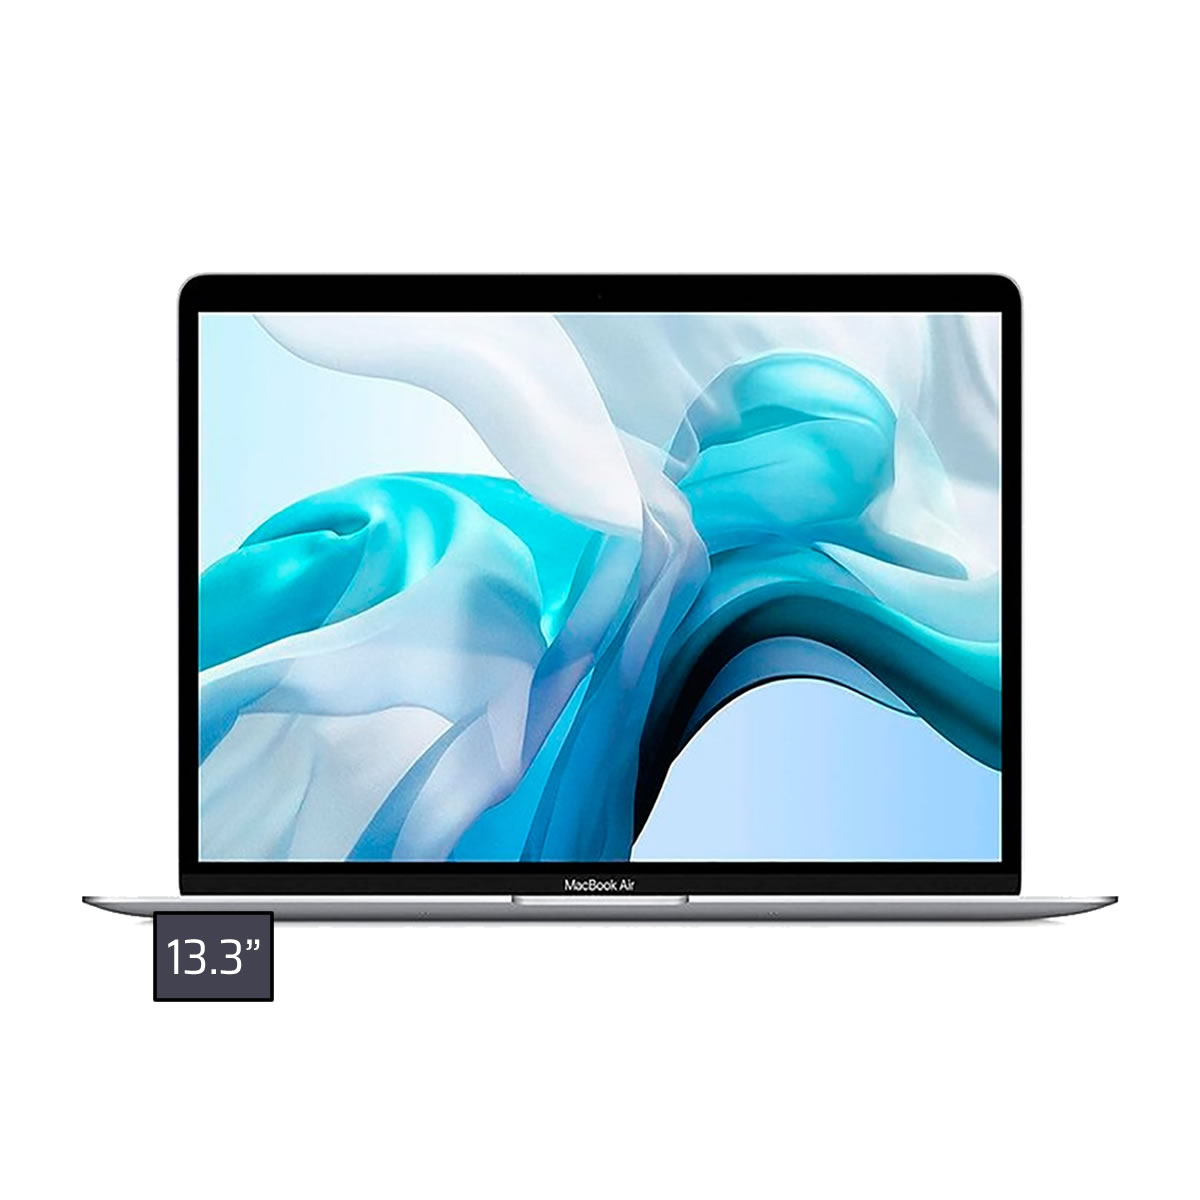 決算セール 超美品 MacBook Air 2019 Core i5 8G SSD 256G | wehandle ...